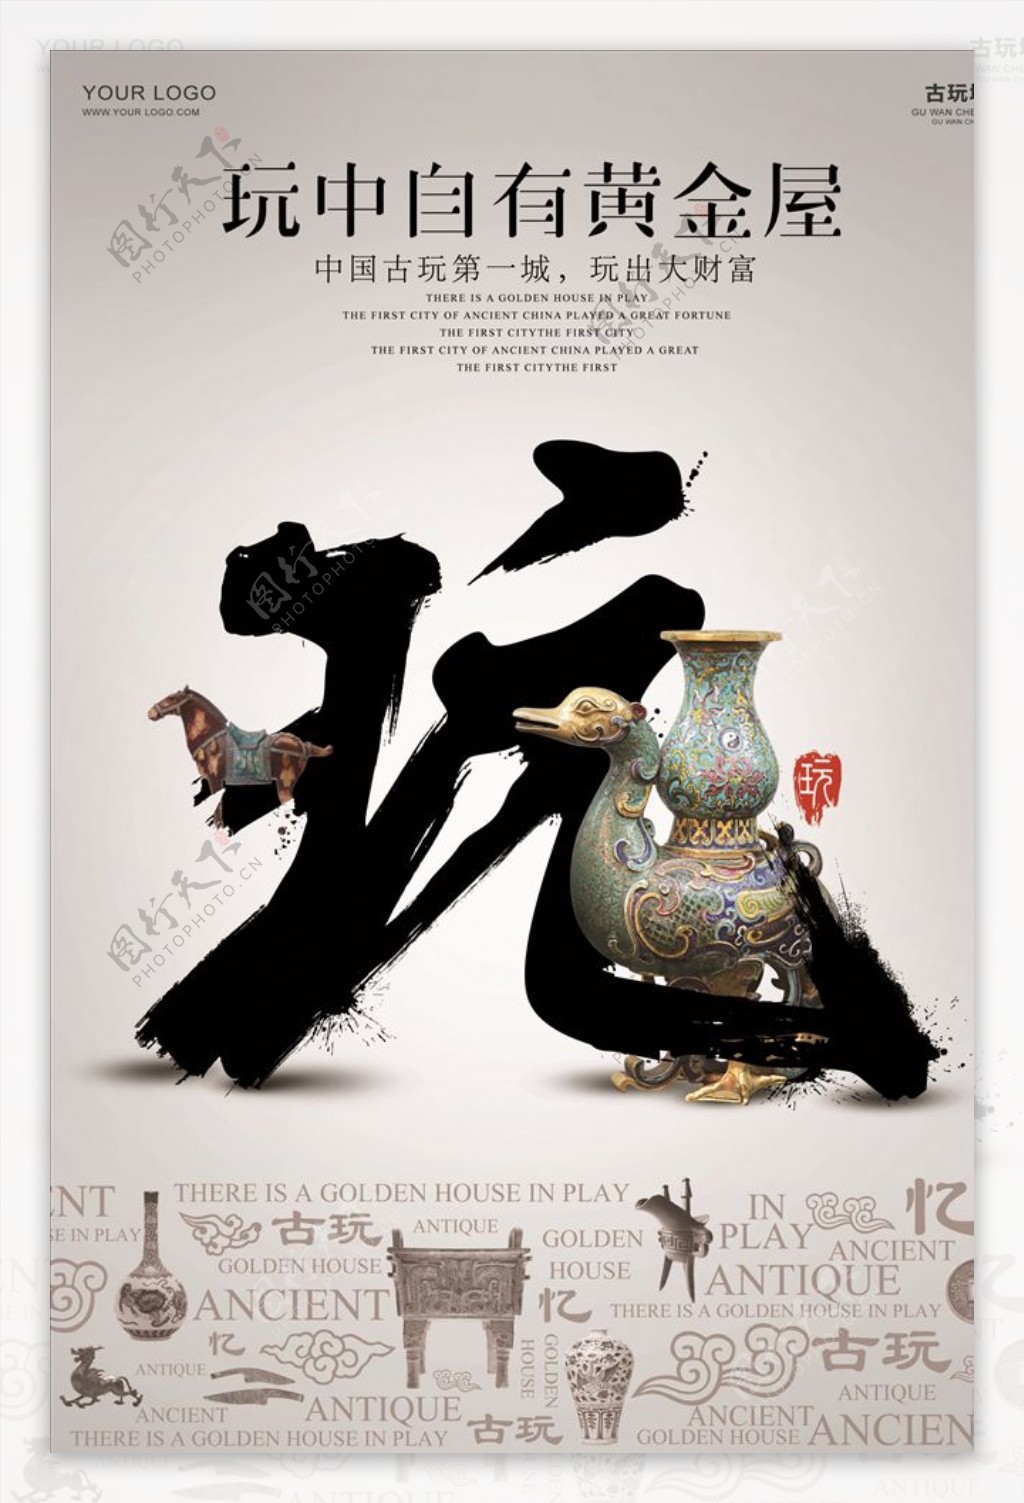 中国风的古玩城招商海报